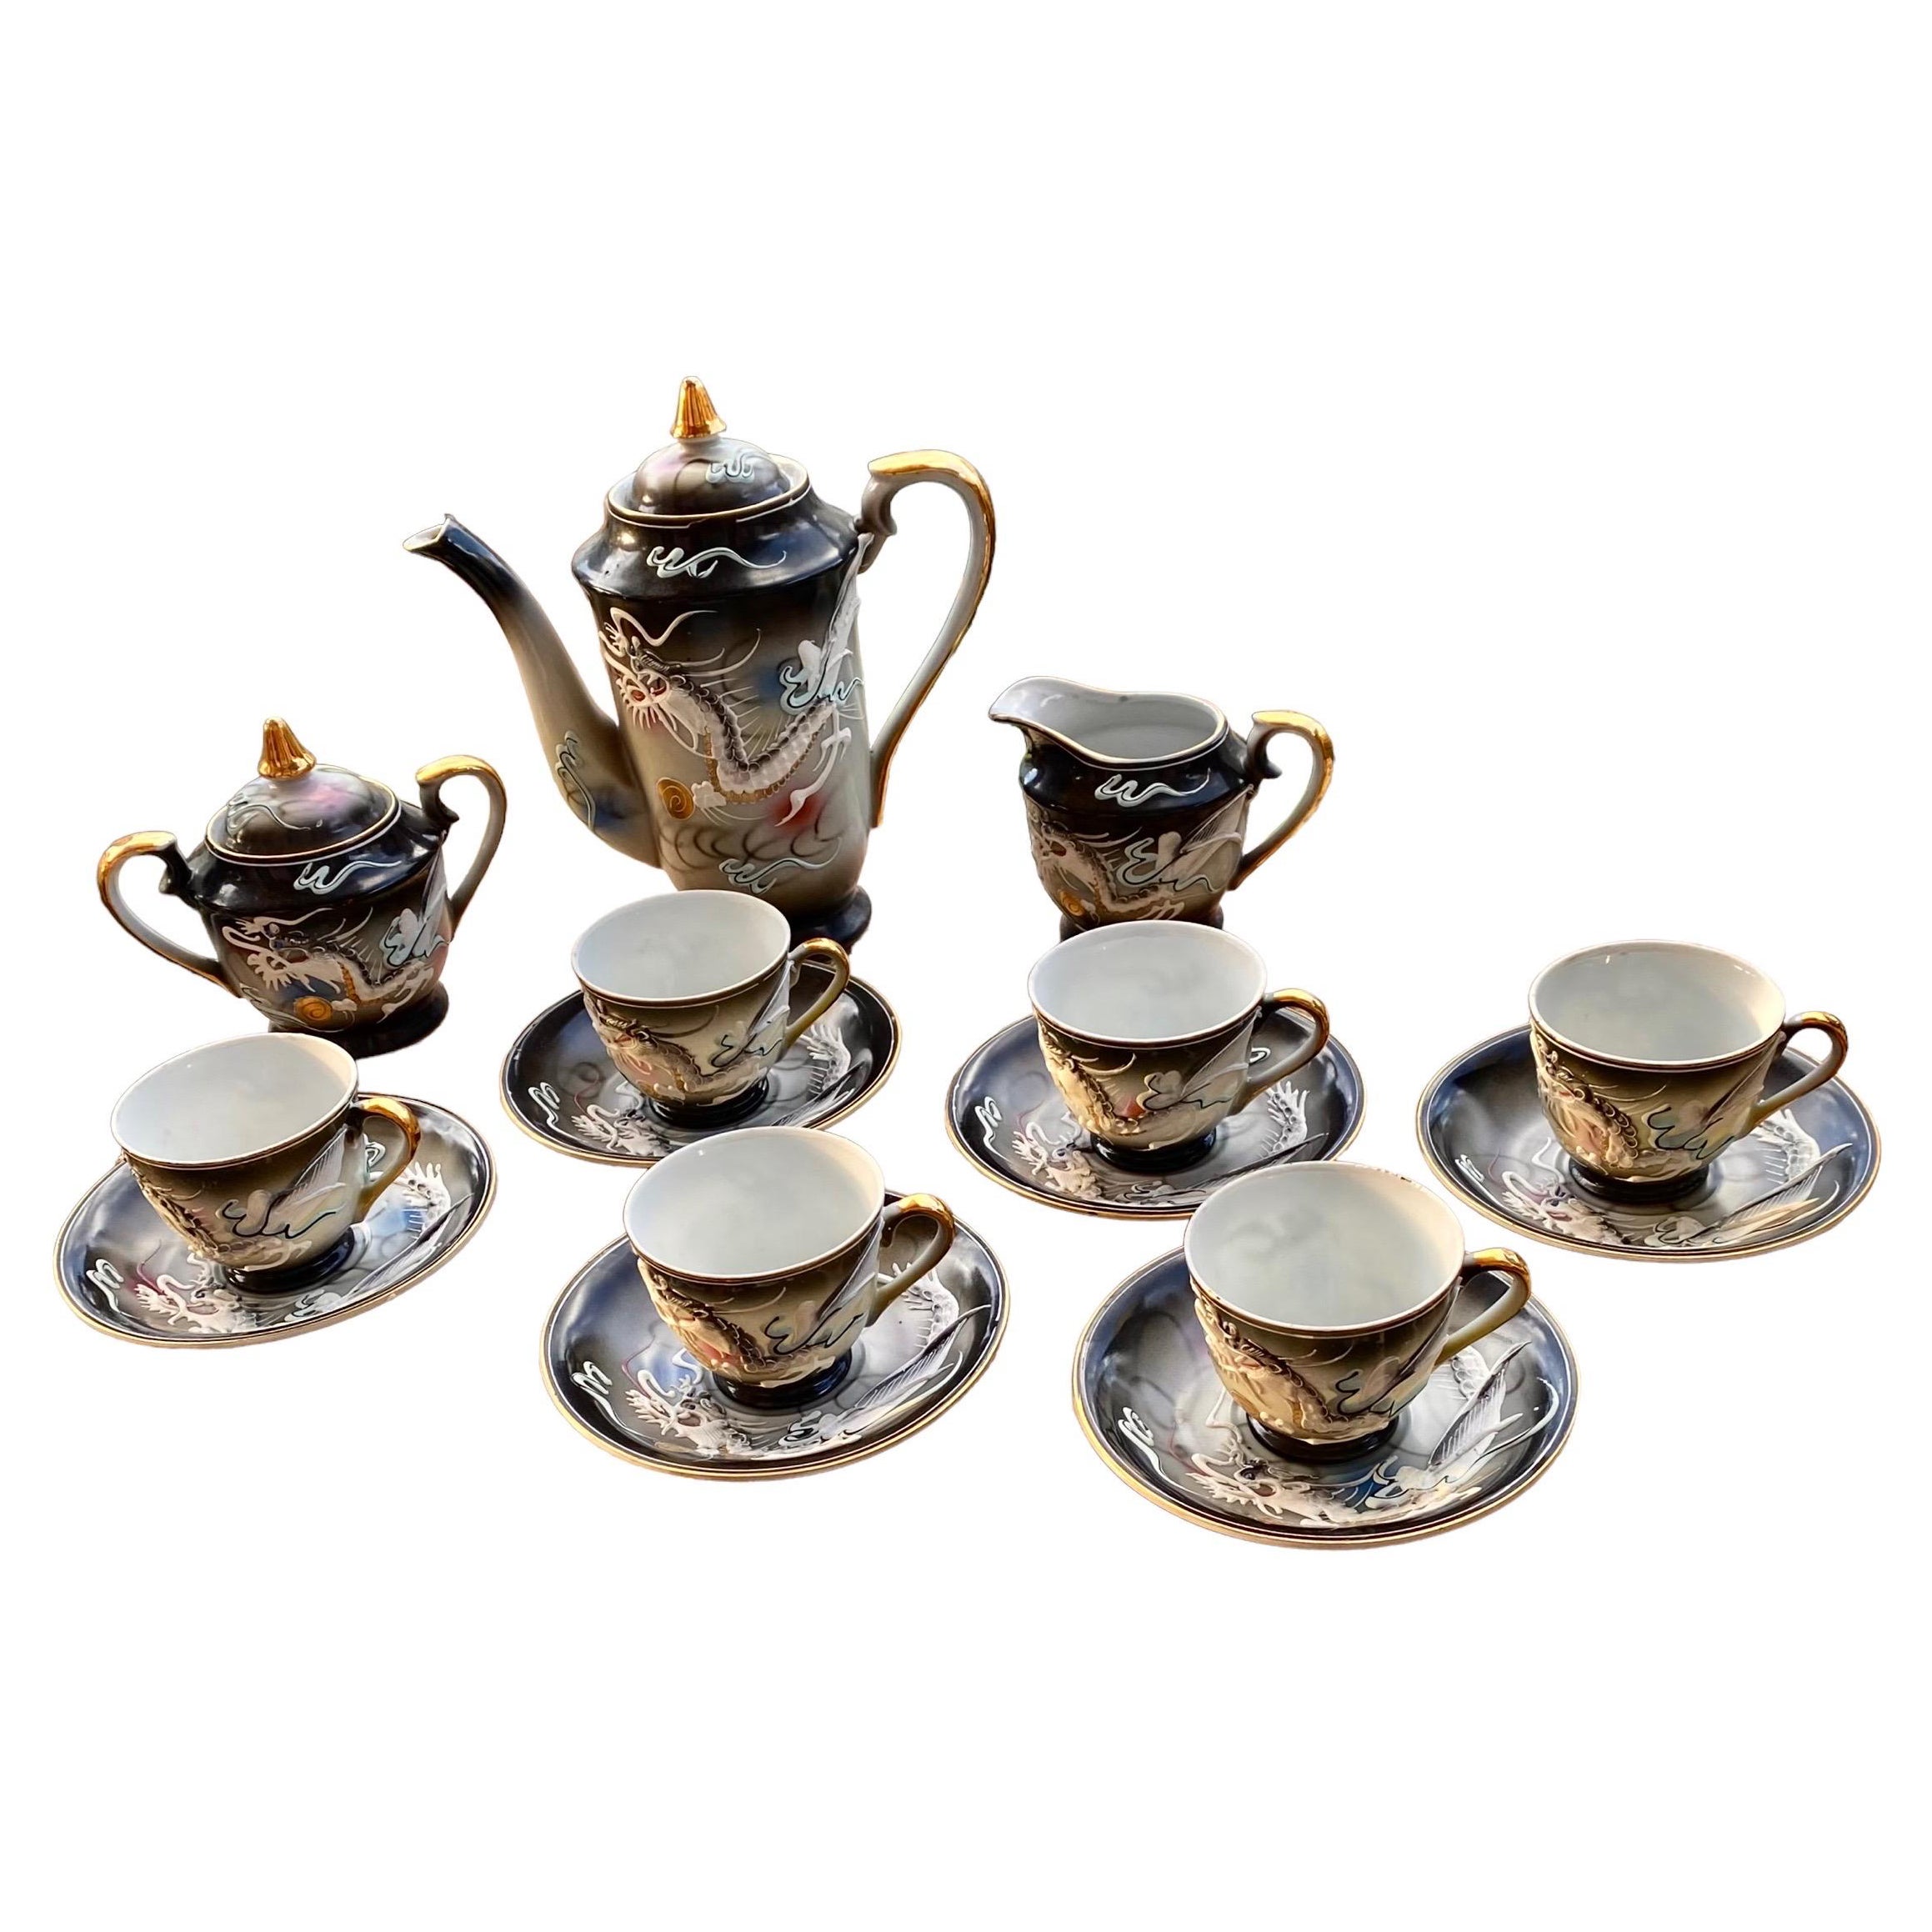 Vintage Porcelain Tea Set - 22 For Sale on 1stDibs | vintage tea sets 